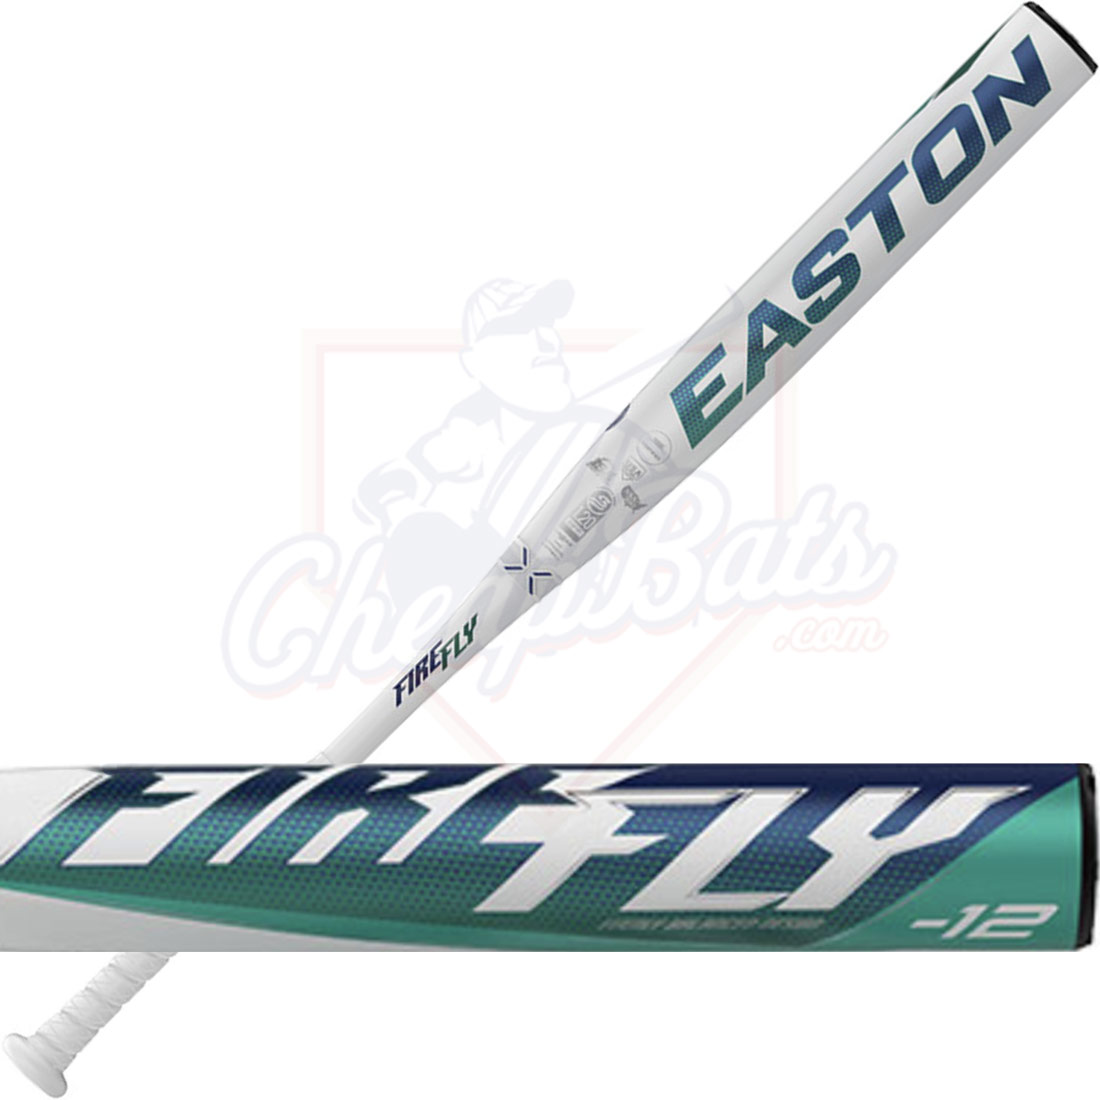 2022 Easton Firefly Fastpitch Softball Bat -12oz FP22FF12